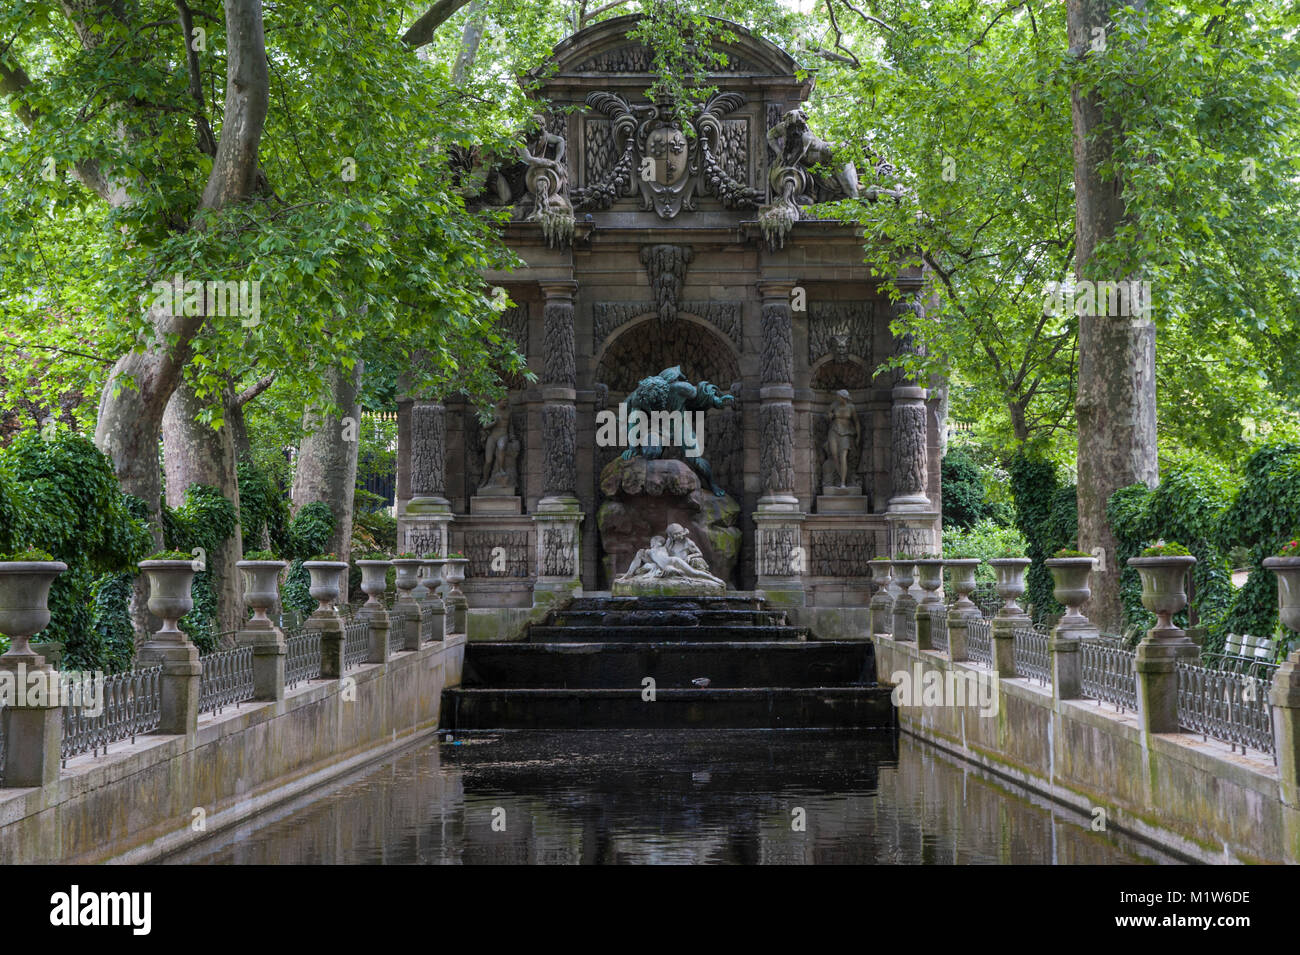 Fontaine de Medicis, fuente de los Médicis, en el jardín de Luxemburgo en París, Francia Foto de stock